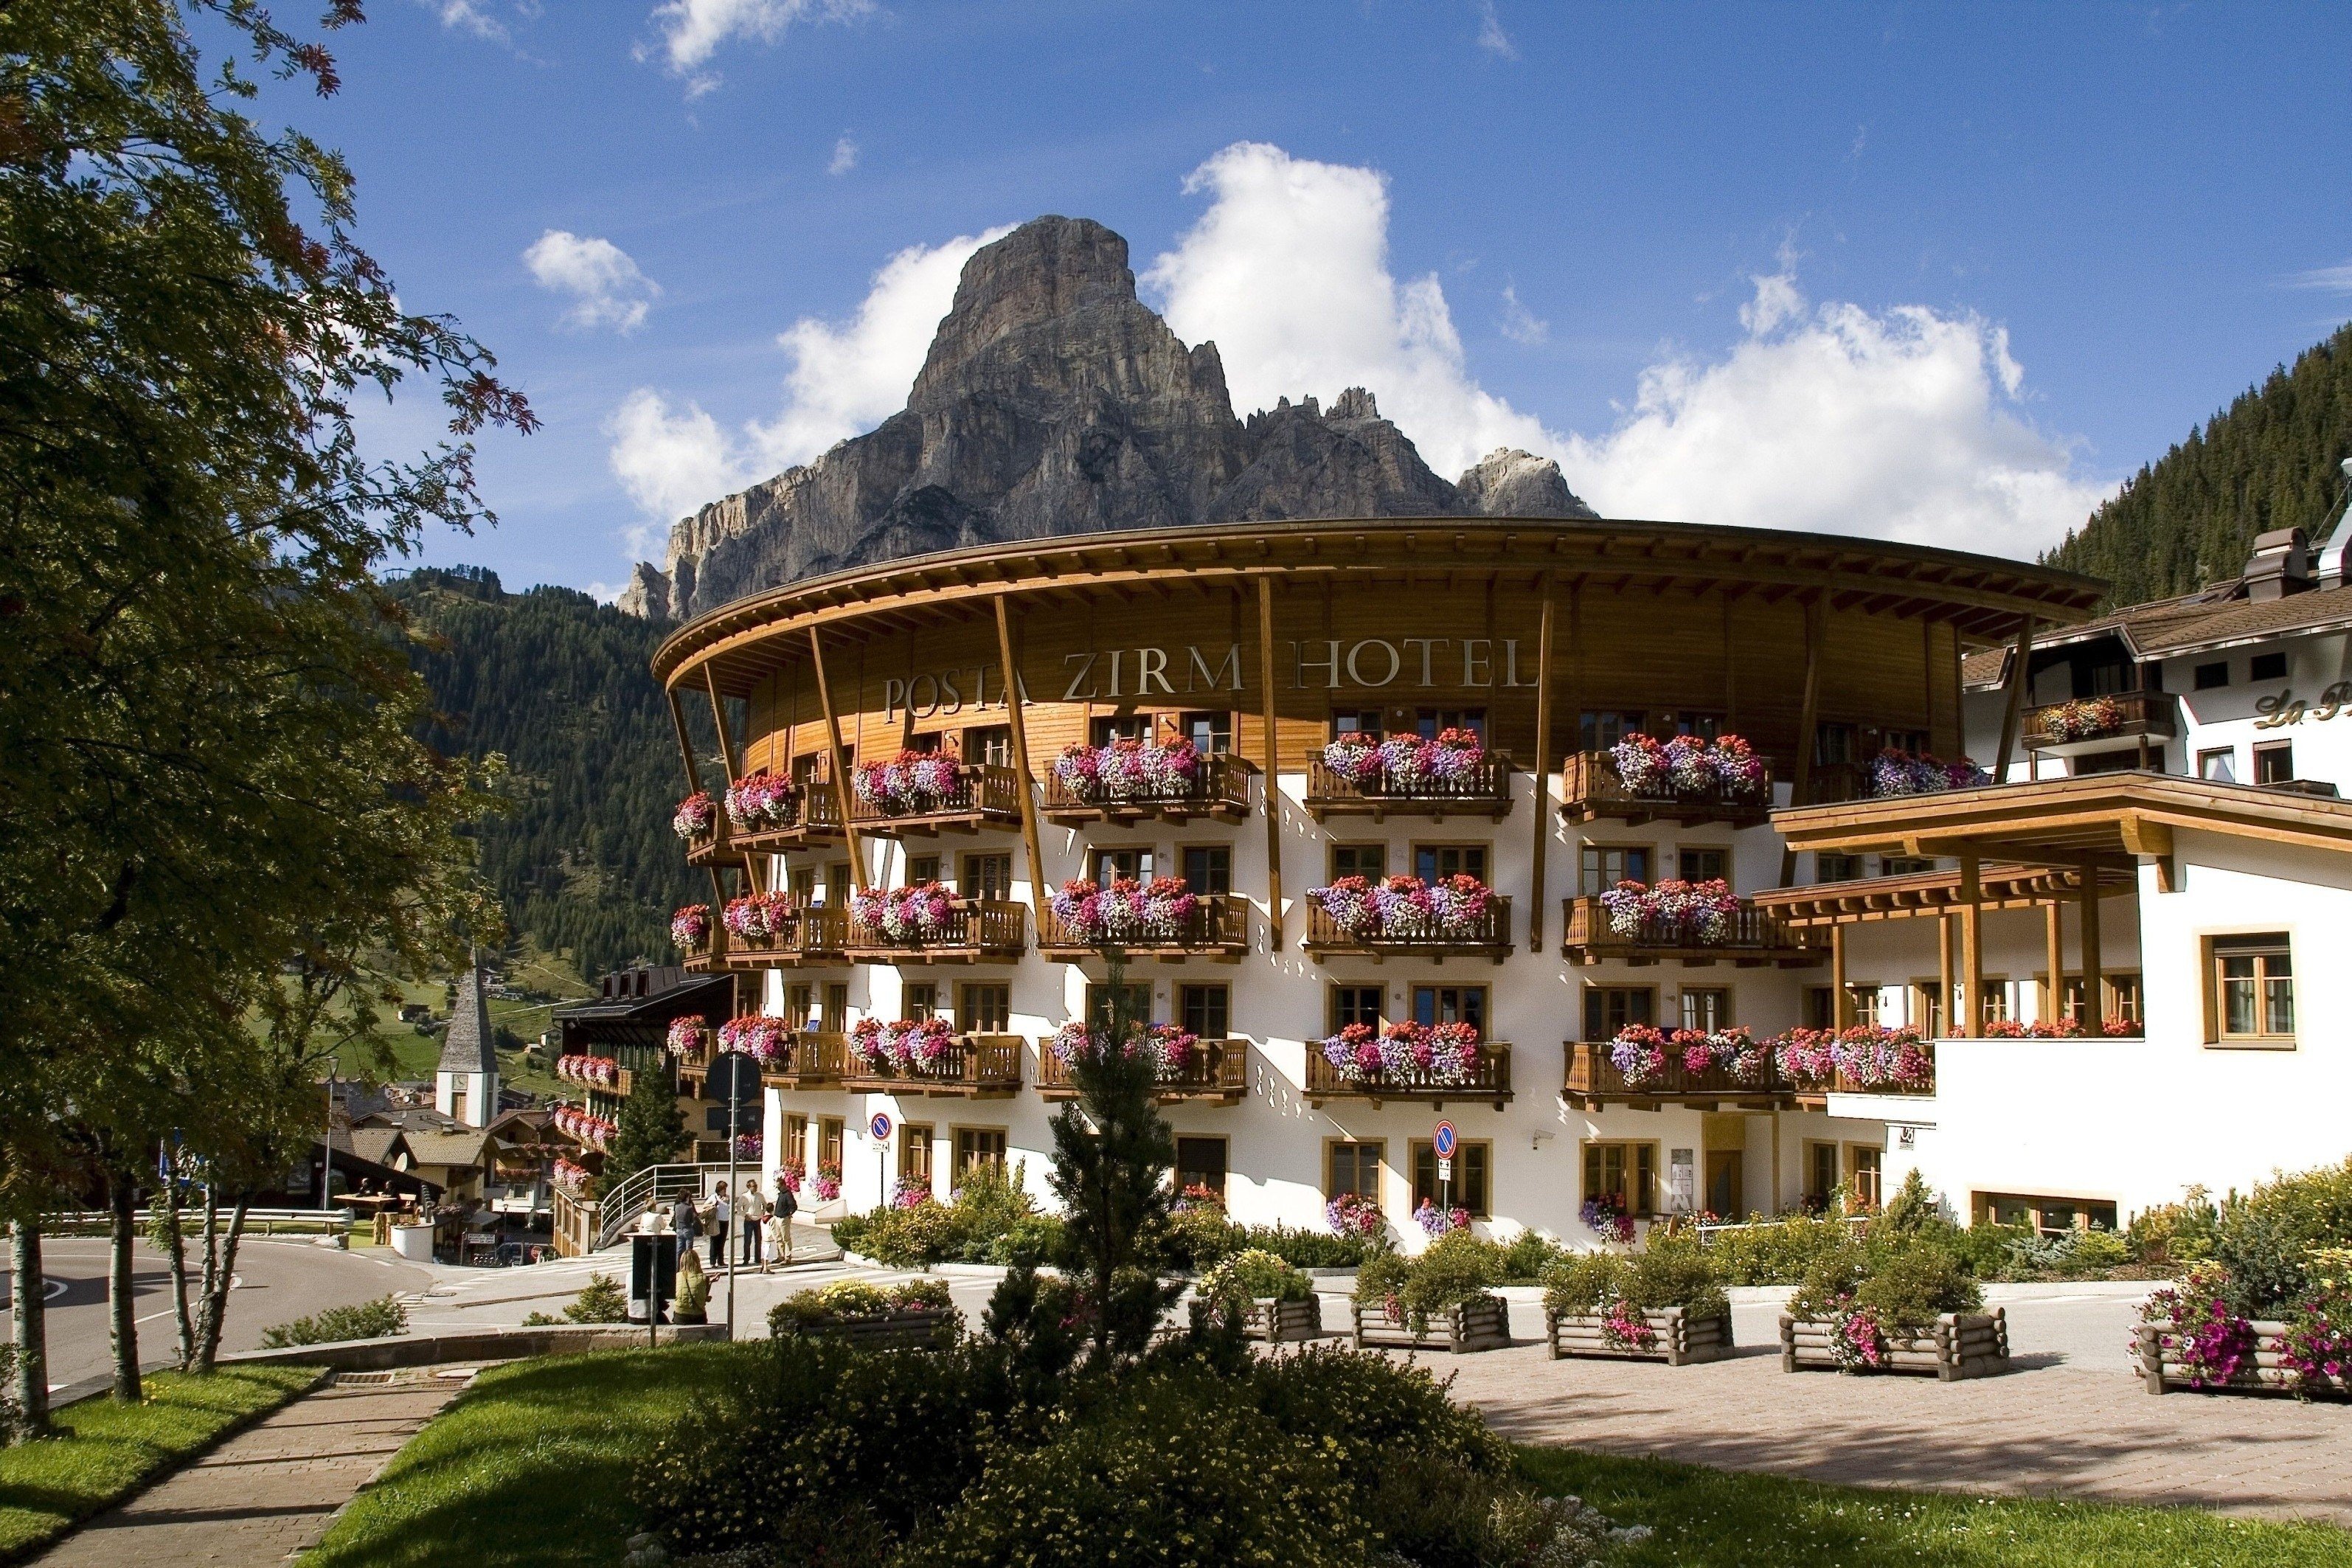 Al momento stai visualizzando Vacanze per famiglie in Alta Val Badia al Posta Zirm Hotel